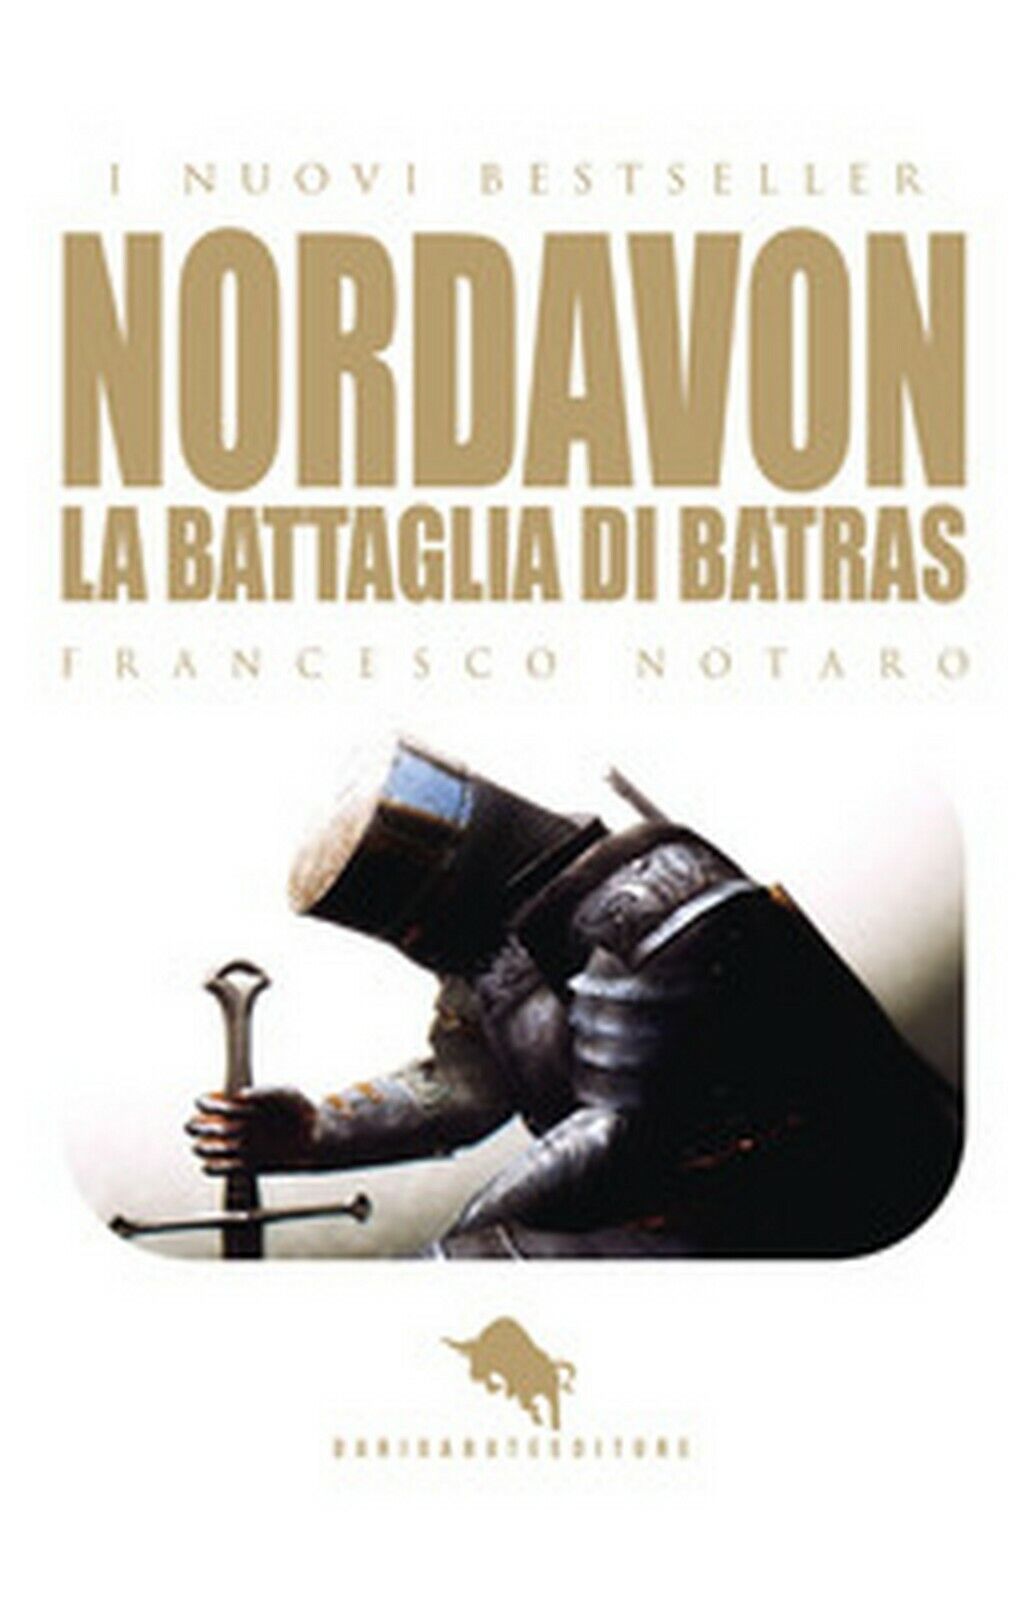 Nordavon, la battaglia di batras  di Francesco Notaro,  2018,  How2 libro usato